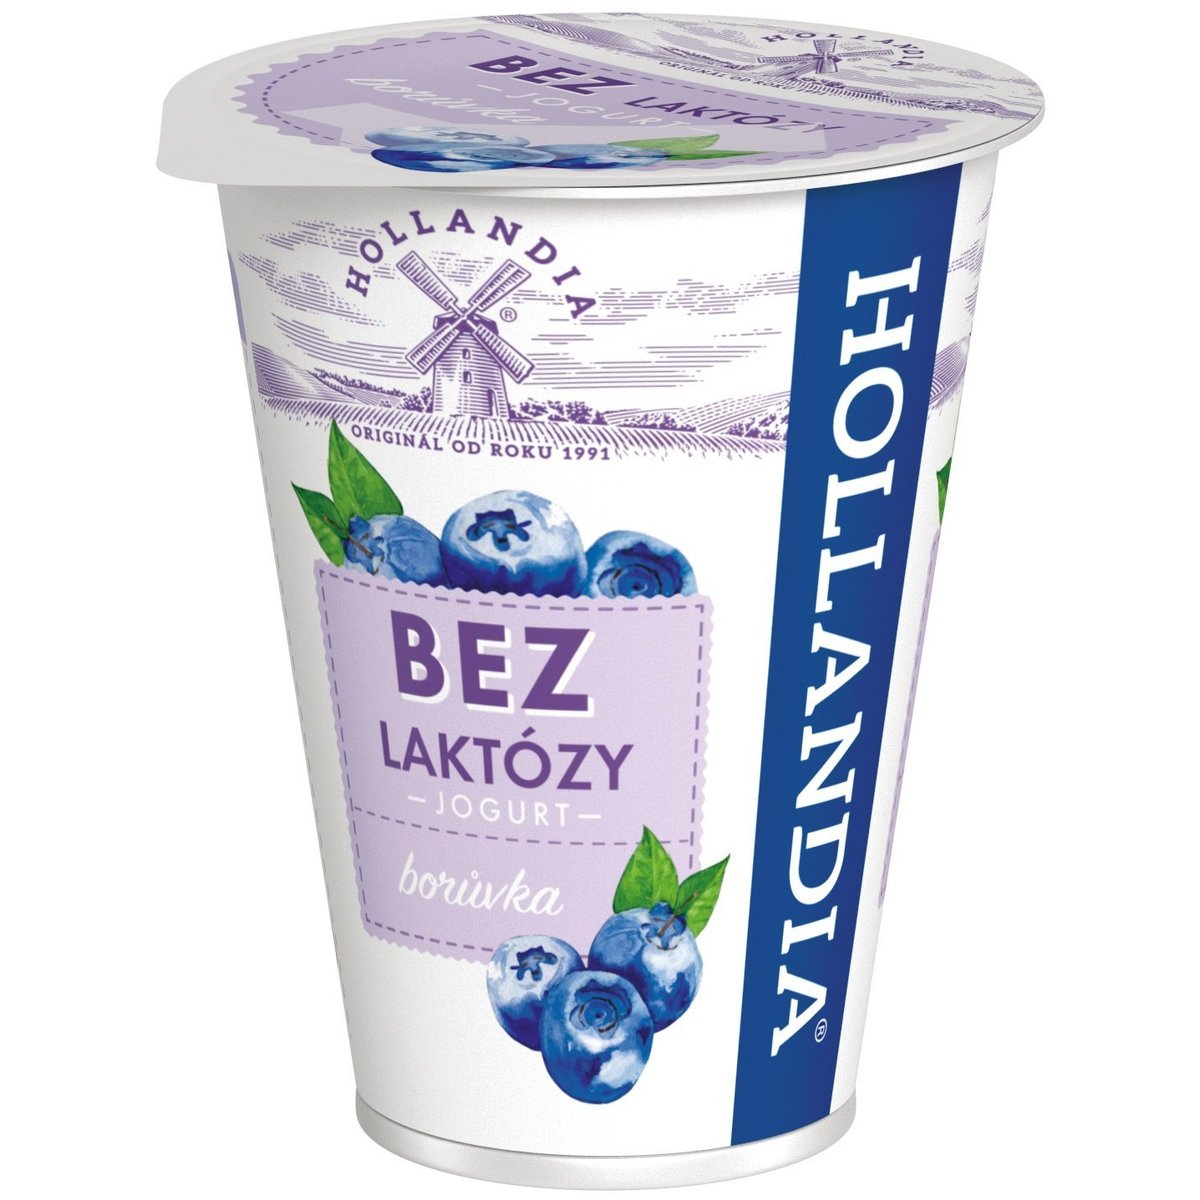 Hollandia Krémový jogurt borůvka bez laktózy